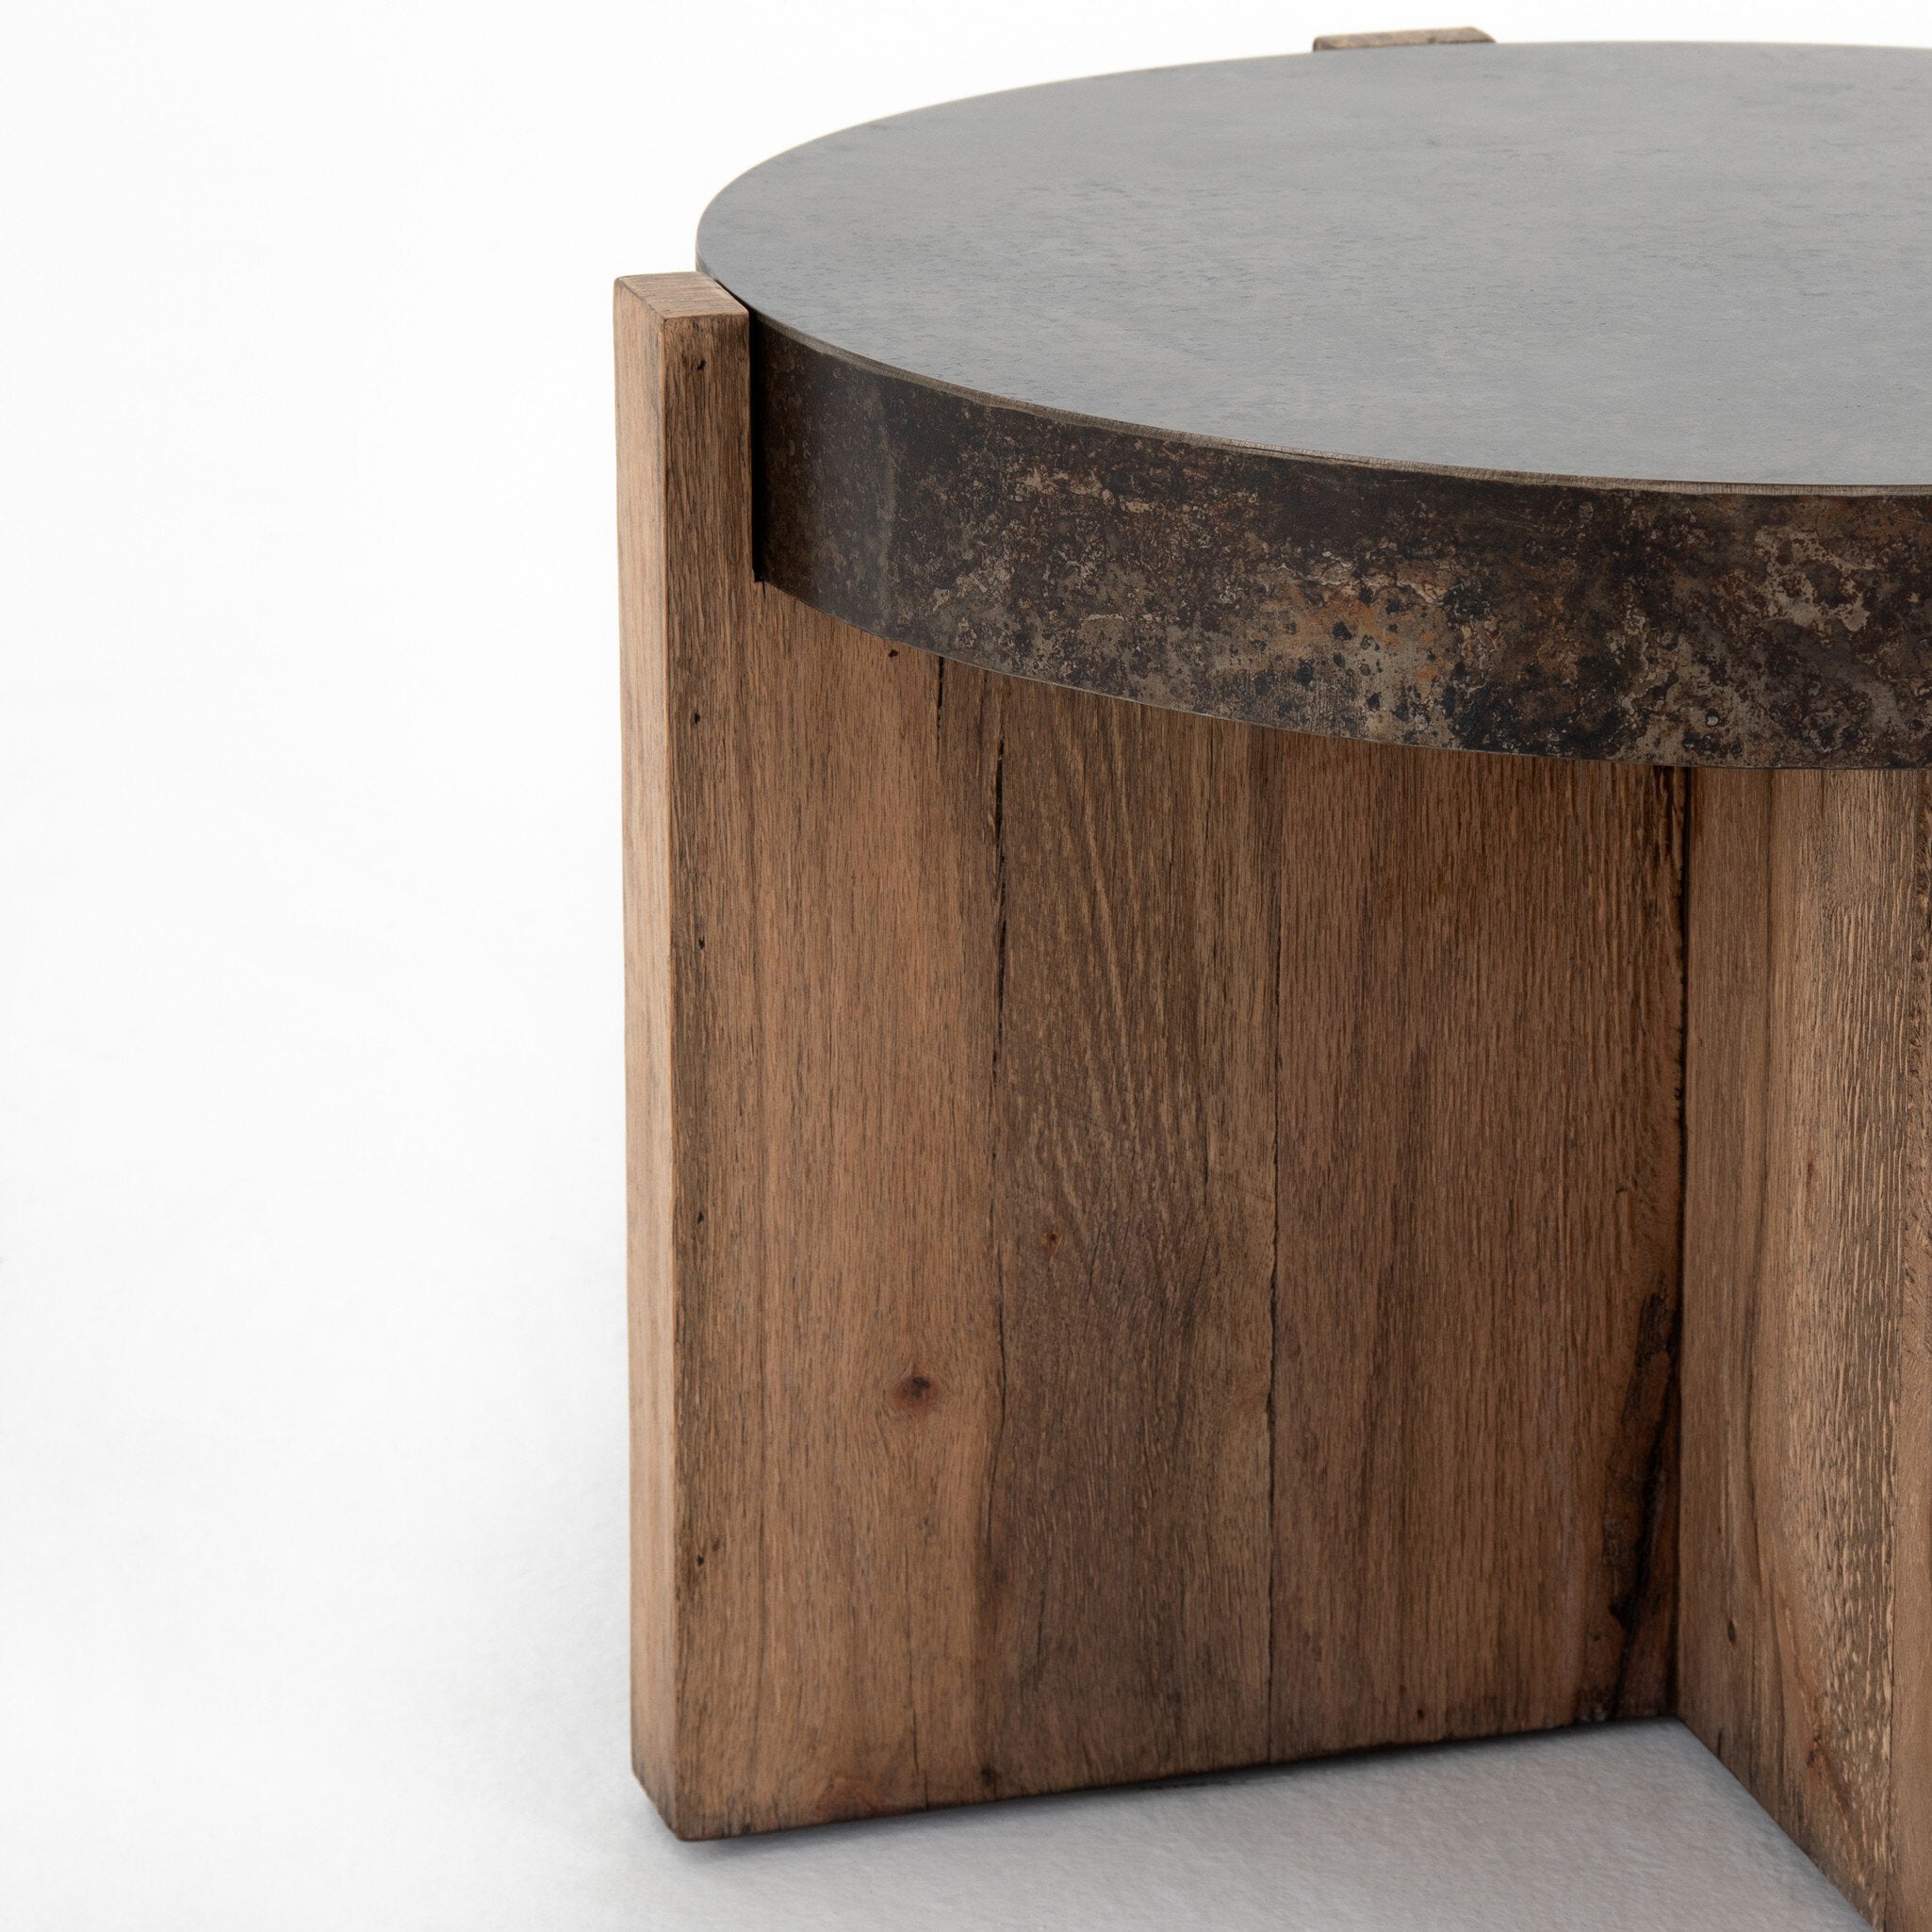 Bingham End Table - Rustic Oak Veneer